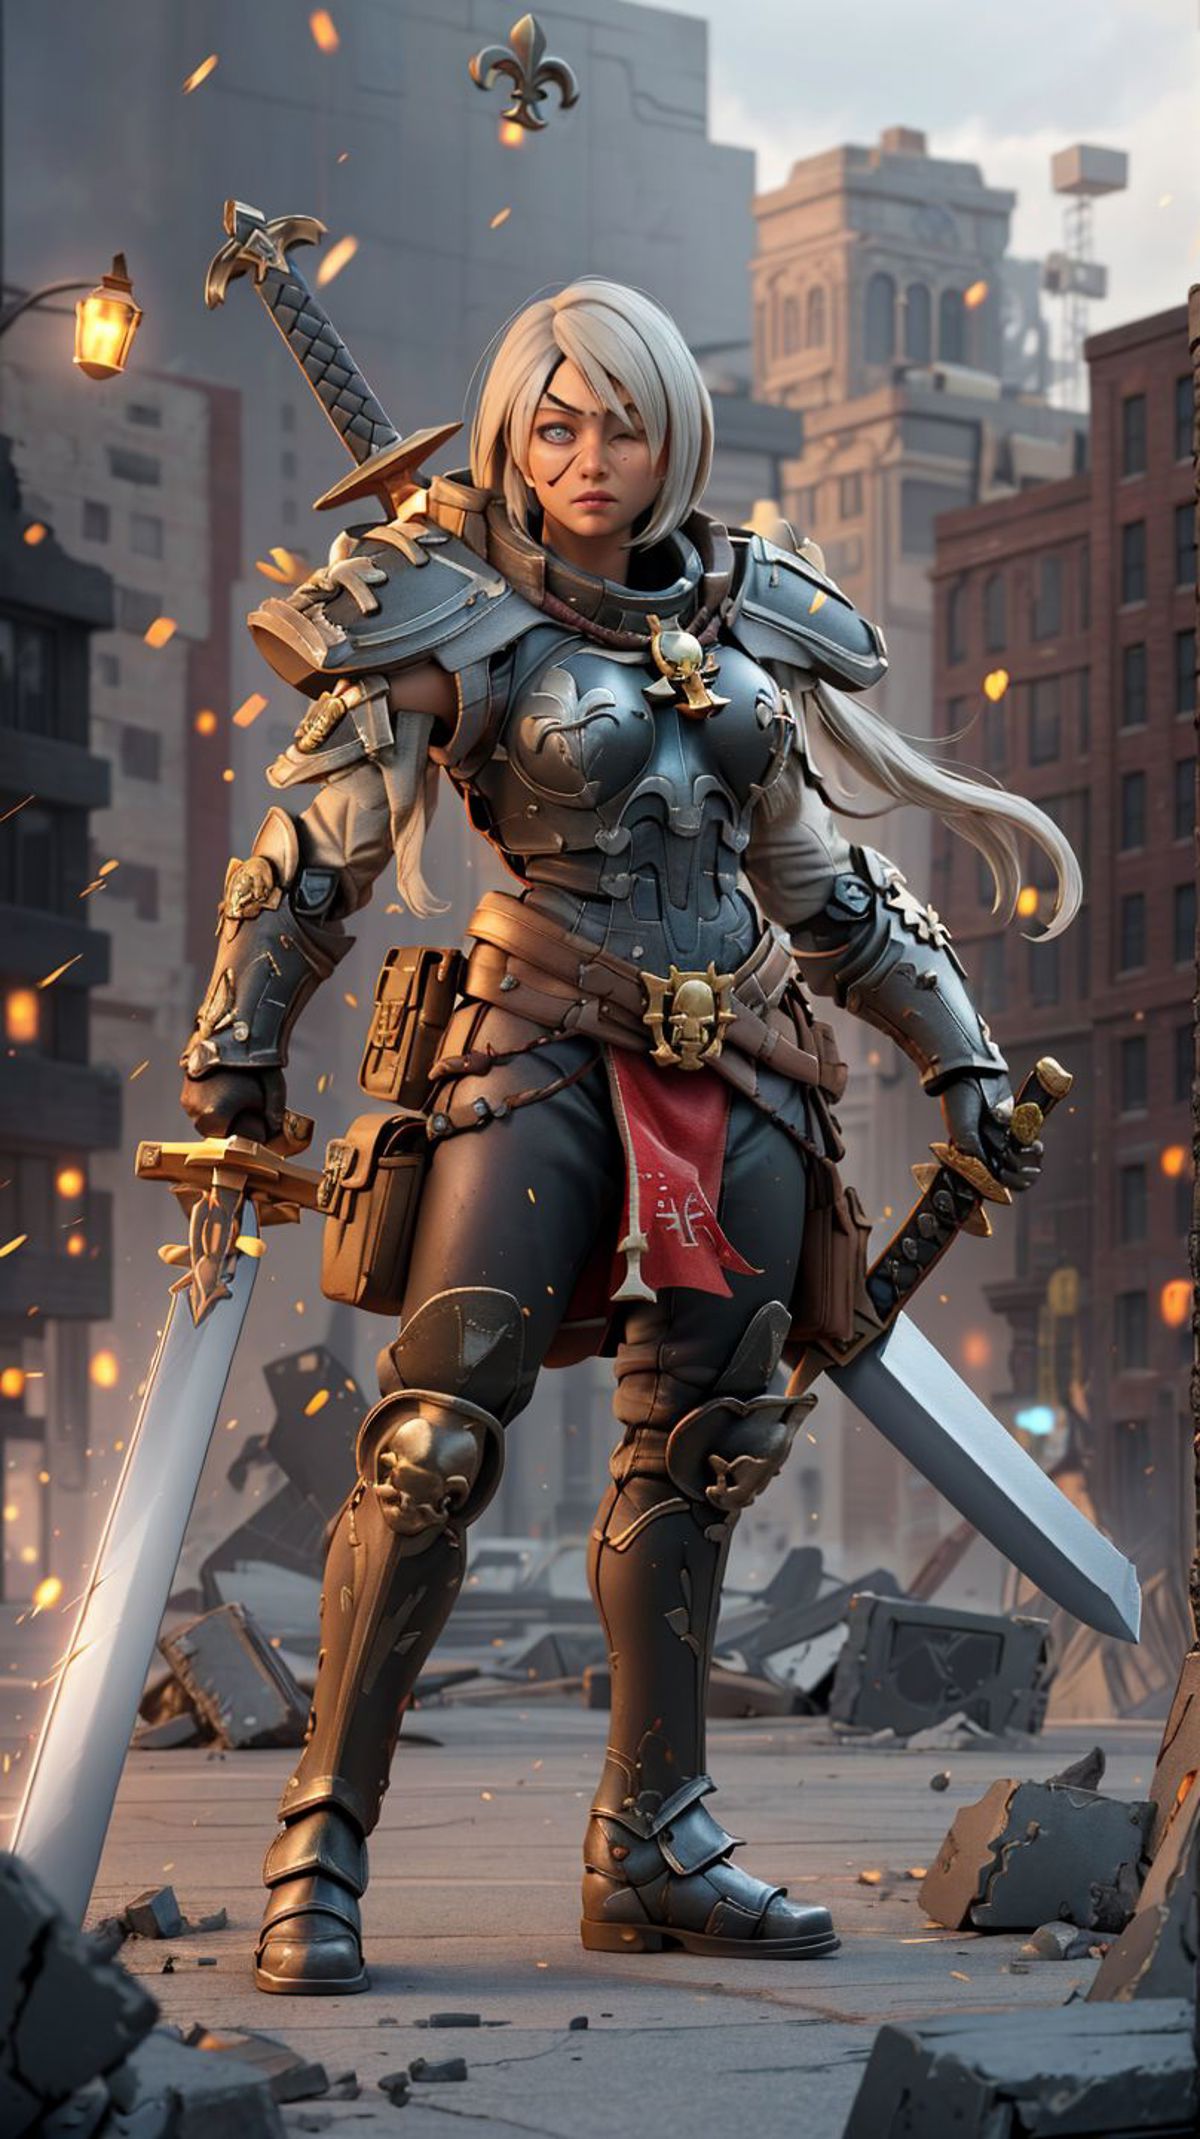 Warhammer 40K Adepta Sororitas Sister of Battle armor - by EDG image by marusame